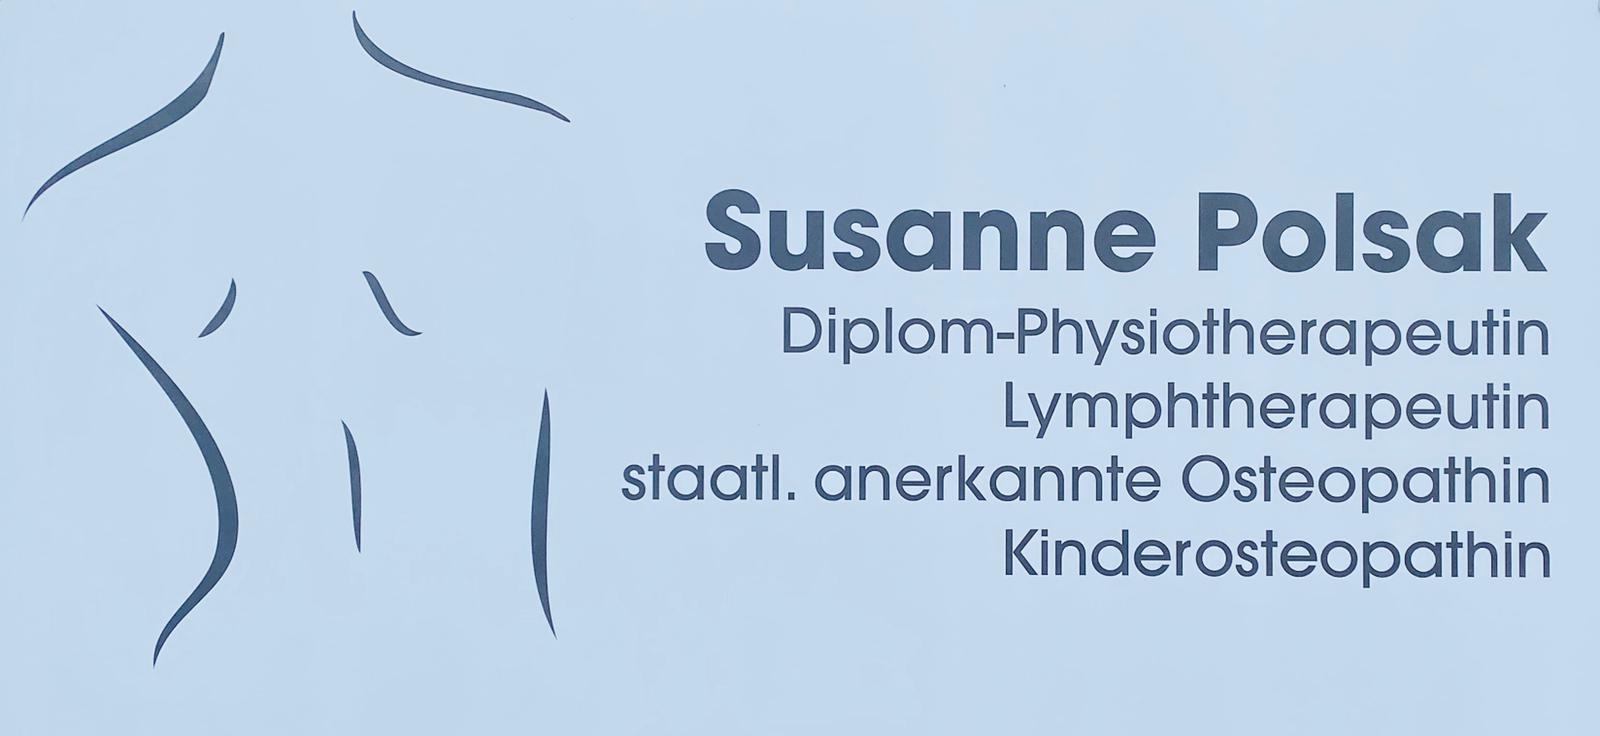 Susanne Polsak-Gusek Praxis für Physiotherapie und Osteopathie, Rheingaubogen 8 in Hochheim am Main